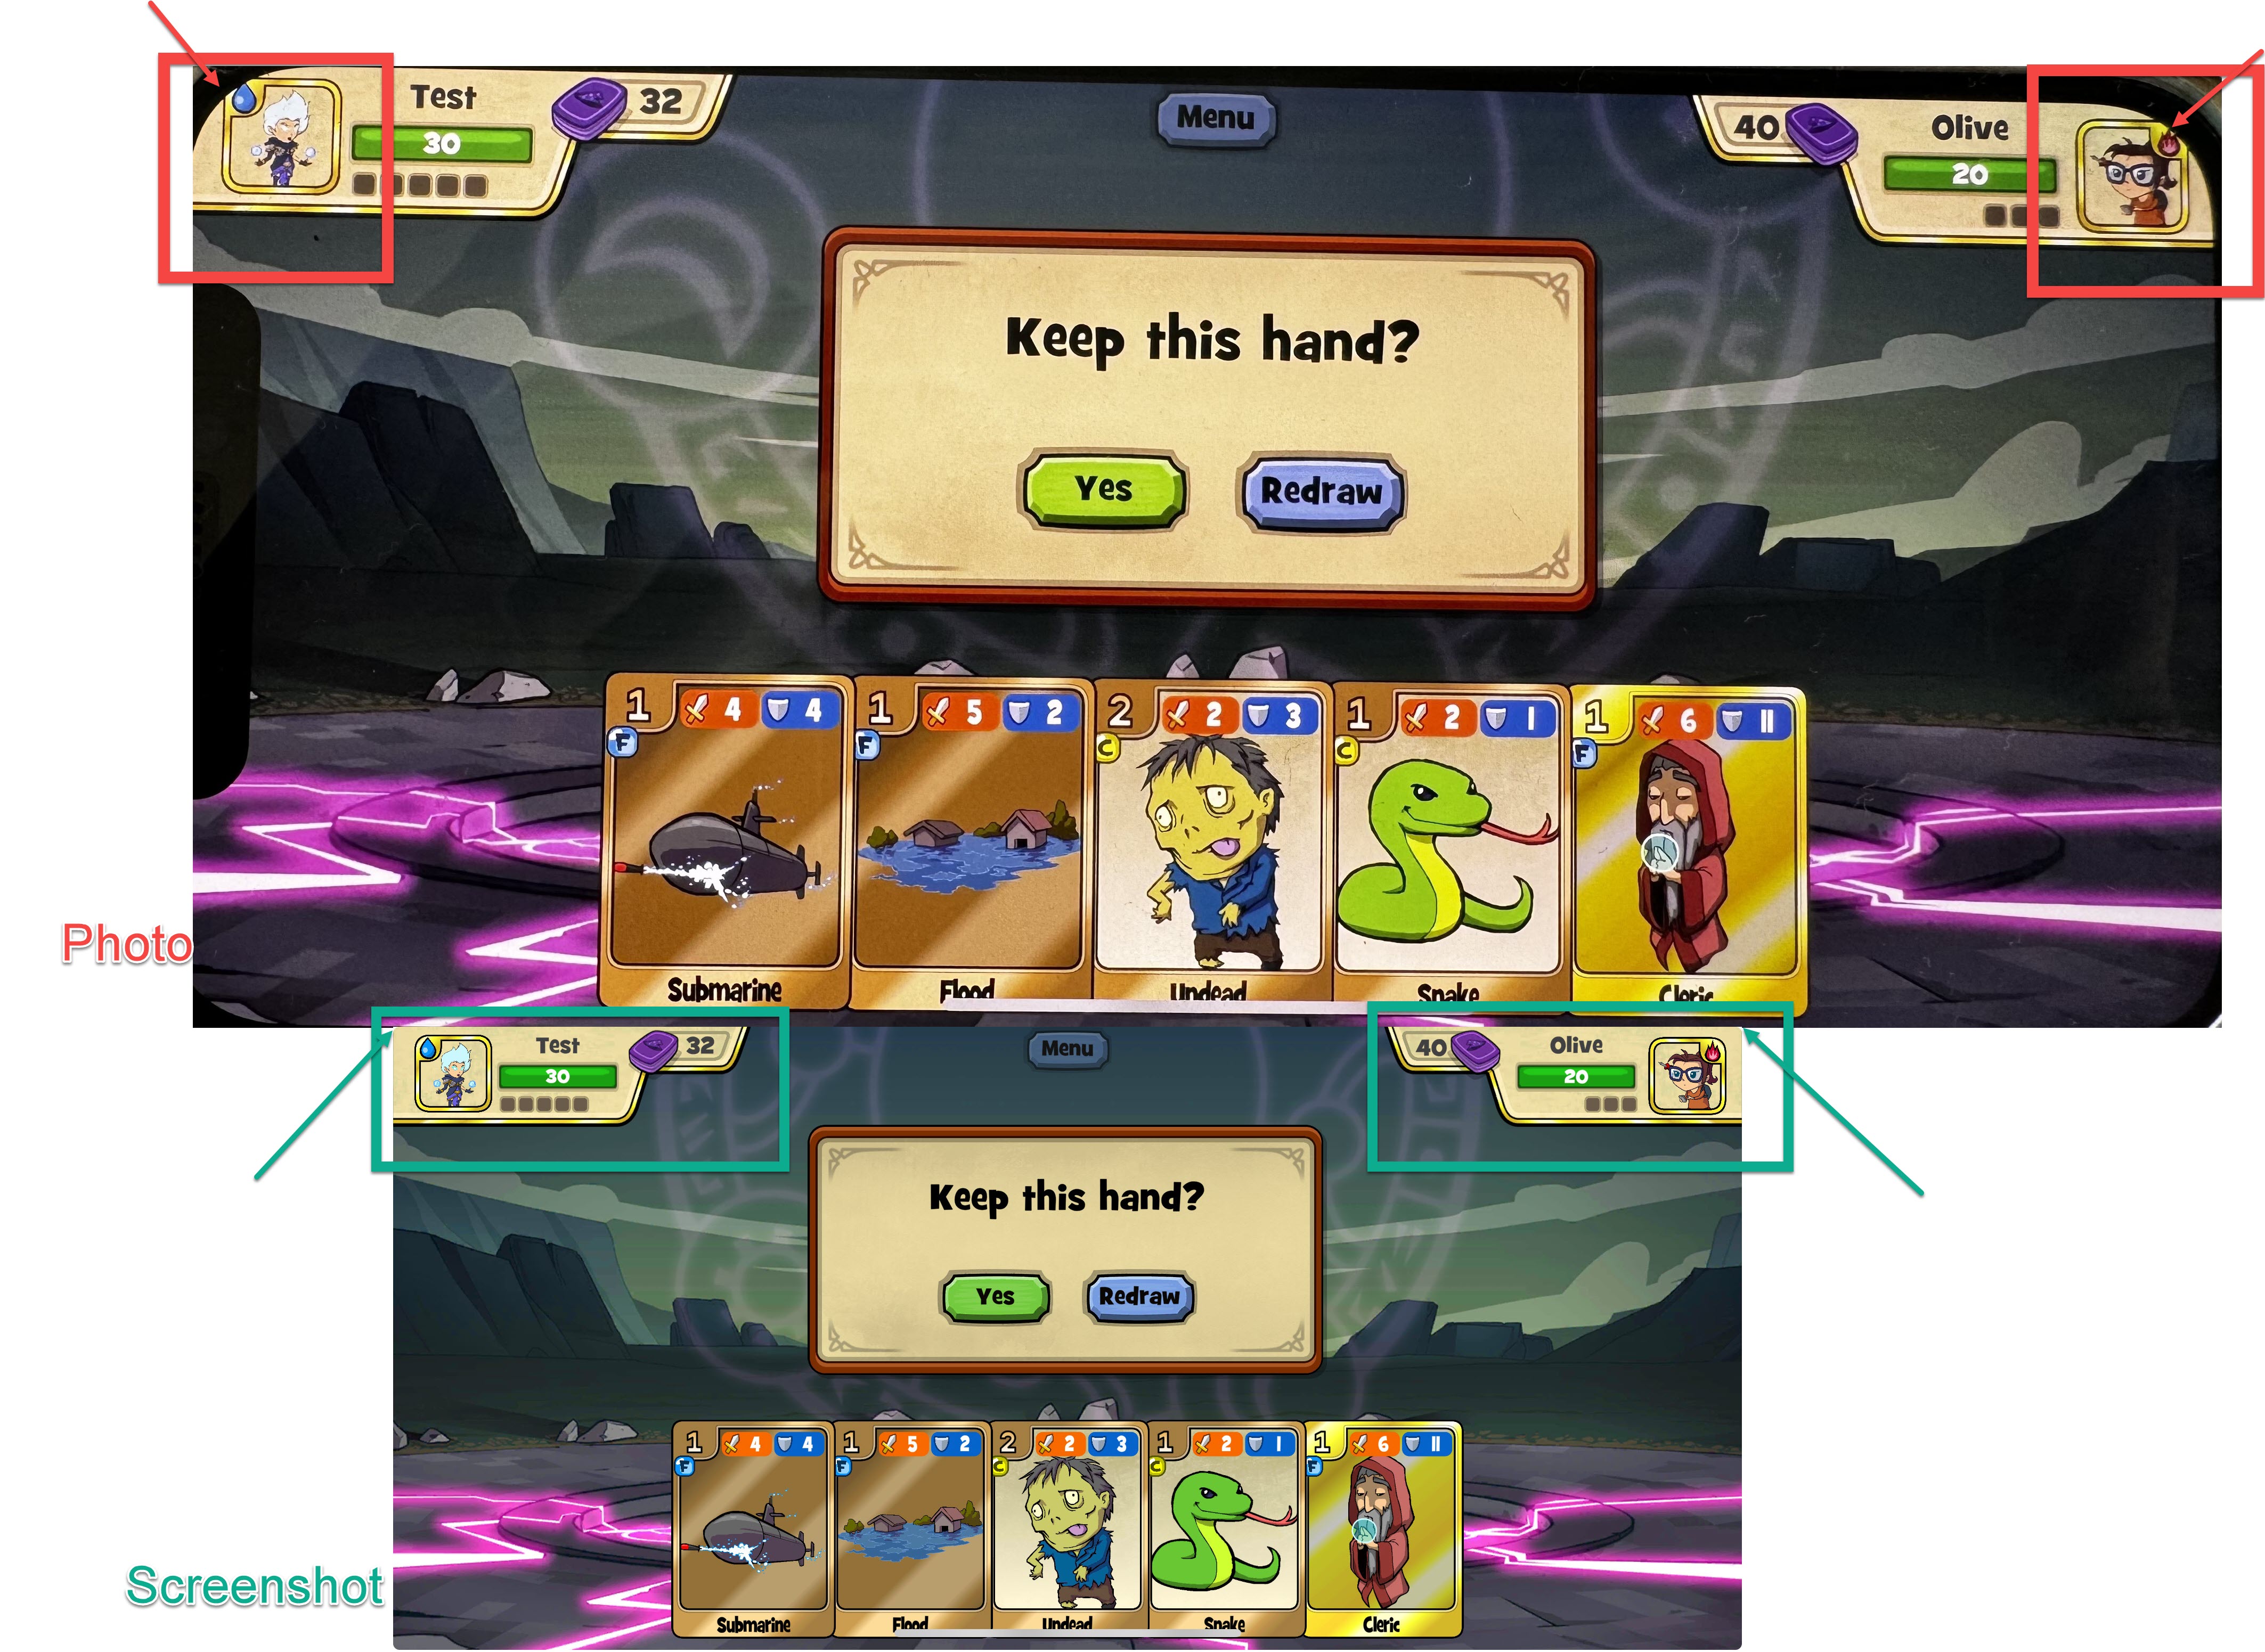 La pantalla del juego no se adapta a la disposición de los gadgets